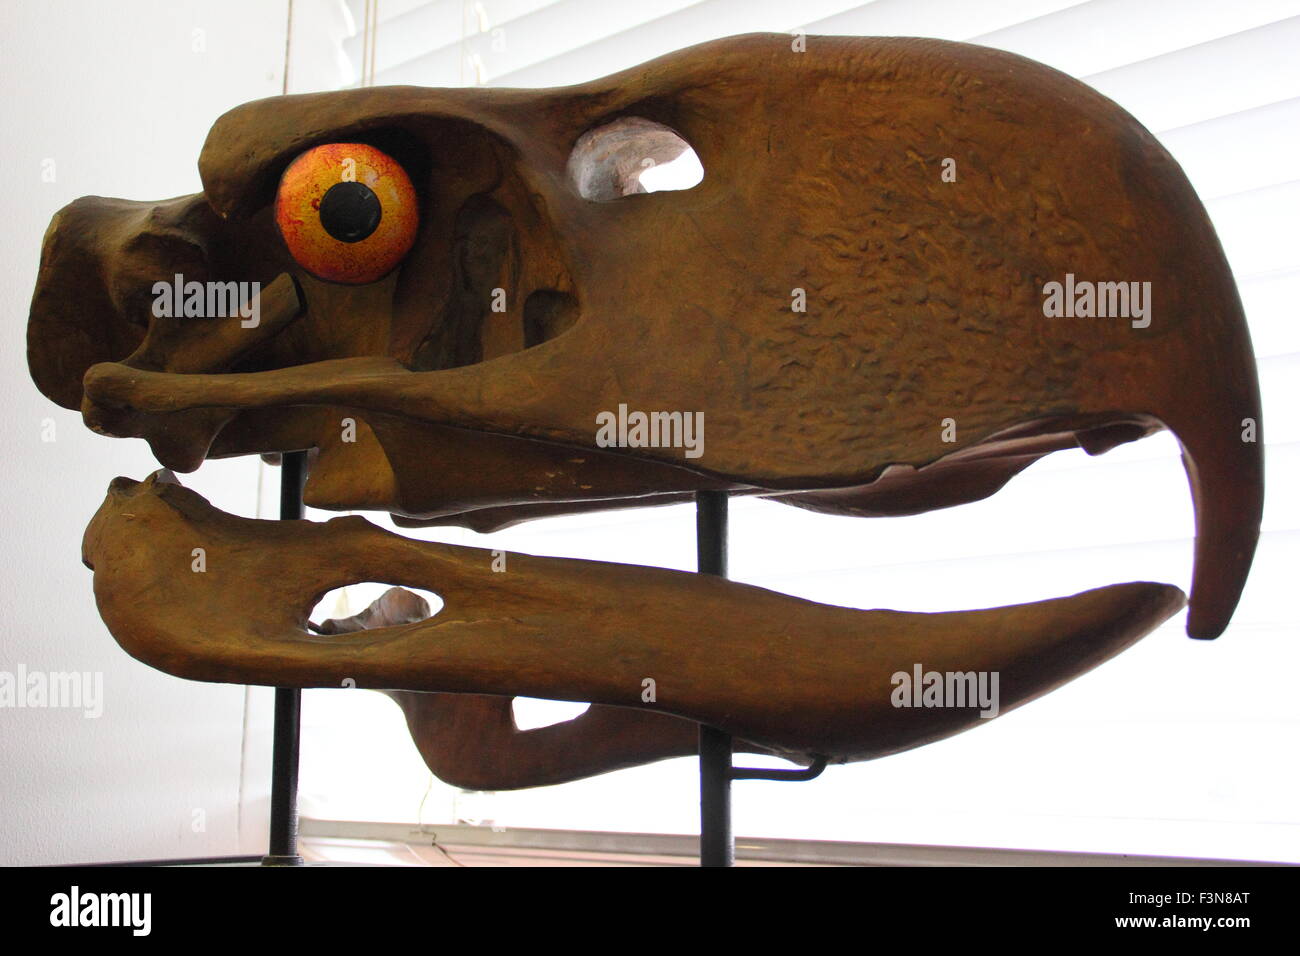 Un modèle de l'giganticskull d'une terreur 'Bird' affichée à l'intérieur de l'Alfred Denny Museum, Université de Sheffield, England, UK Banque D'Images